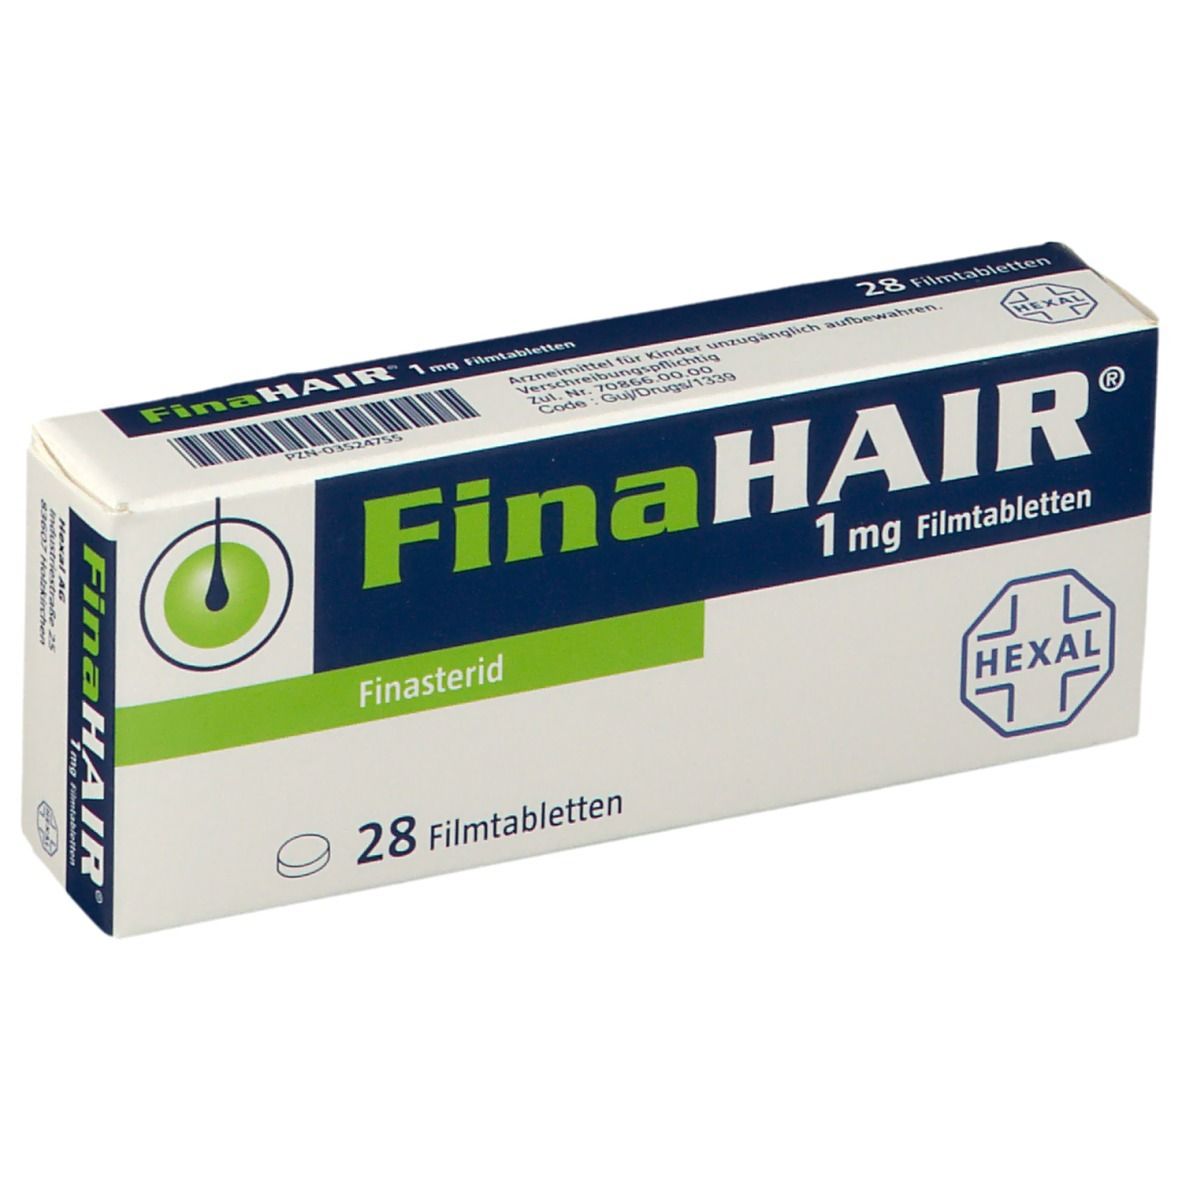 FinaHAIR® 1 mg